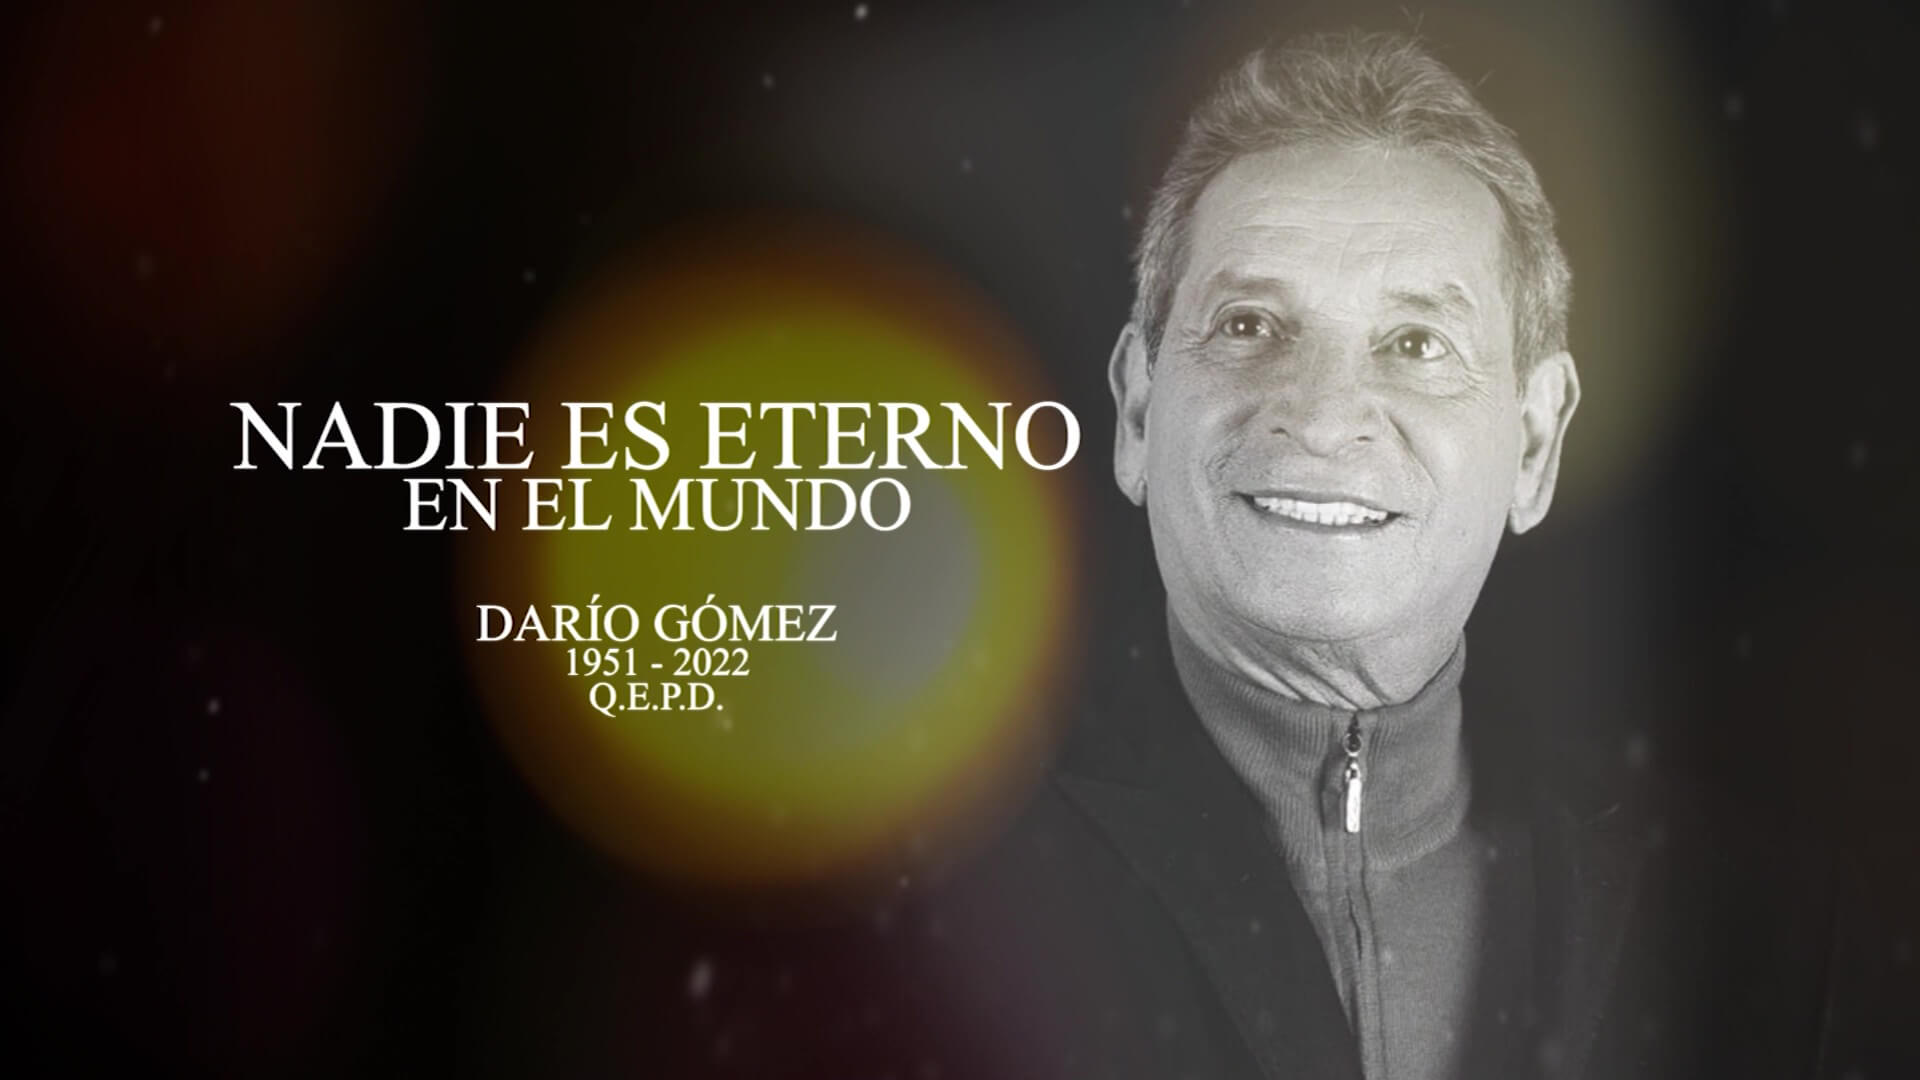 Capilla ardiente para adiós a Darío Gómez